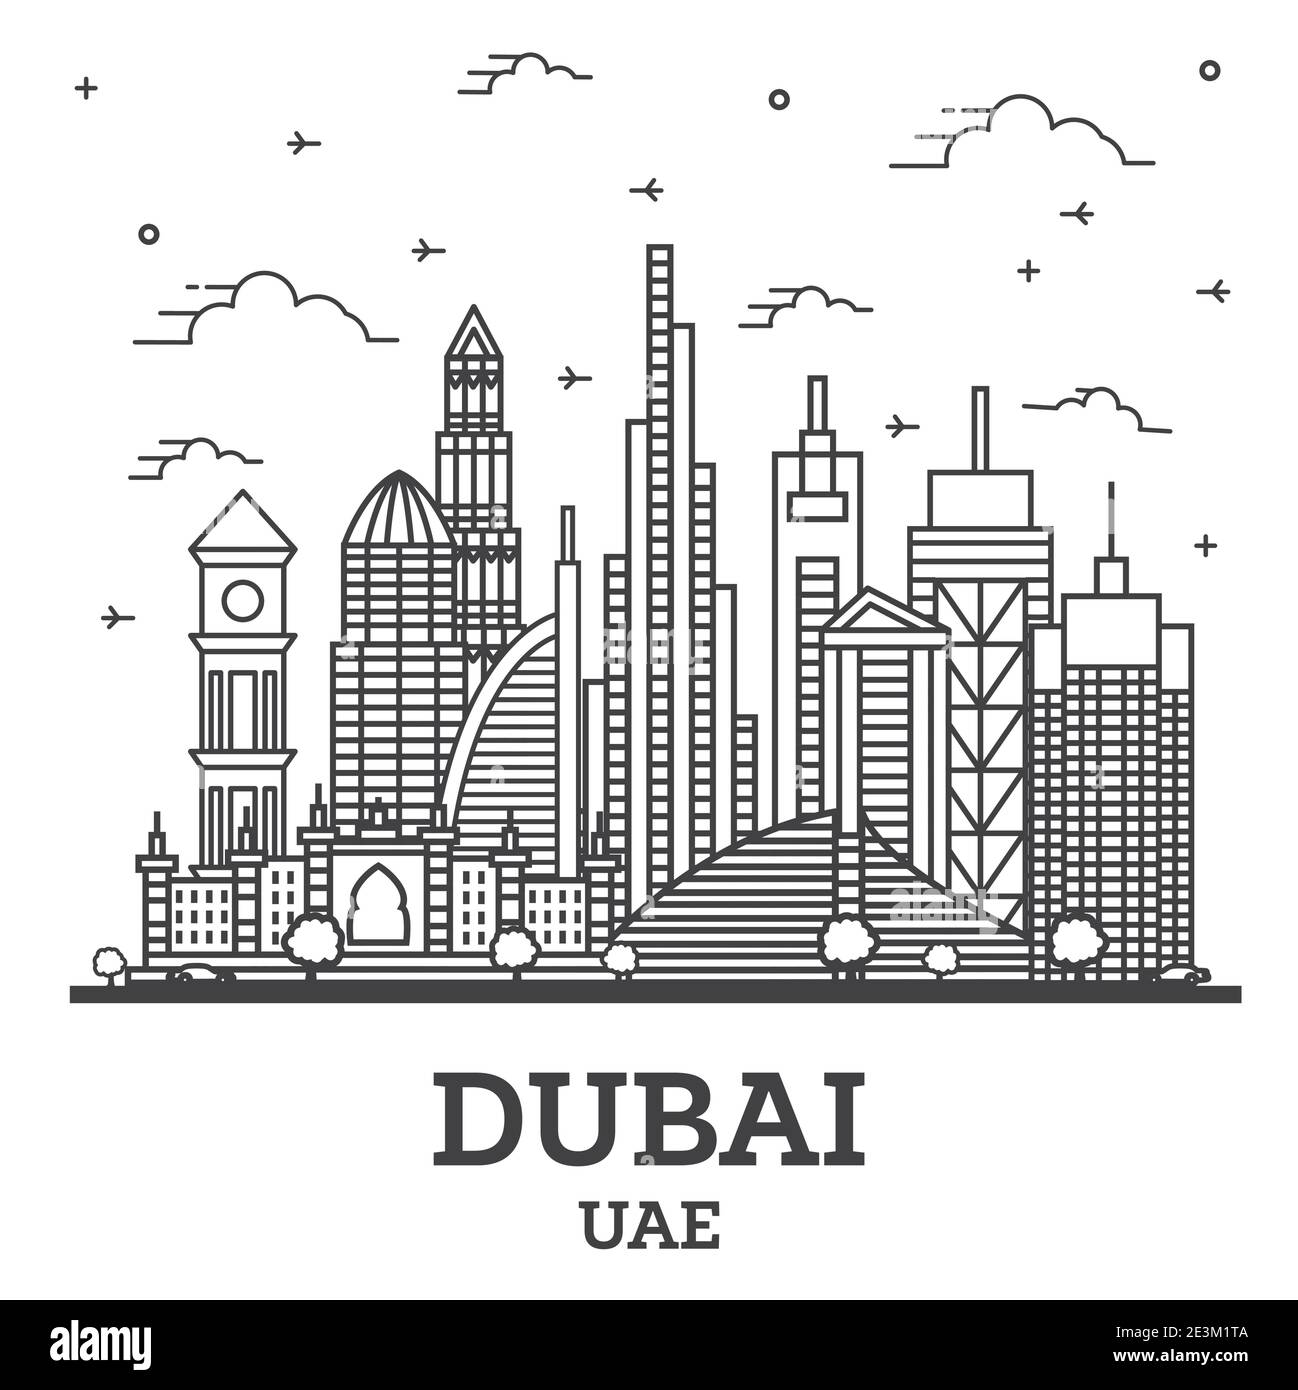 Übersicht Dubai Vereinigte Arabische Emirate (VAE) City Skyline mit modernen Gebäuden isoliert auf White. Vektorgrafik. Dubai Stadtbild mit Wahrzeichen. Stock Vektor